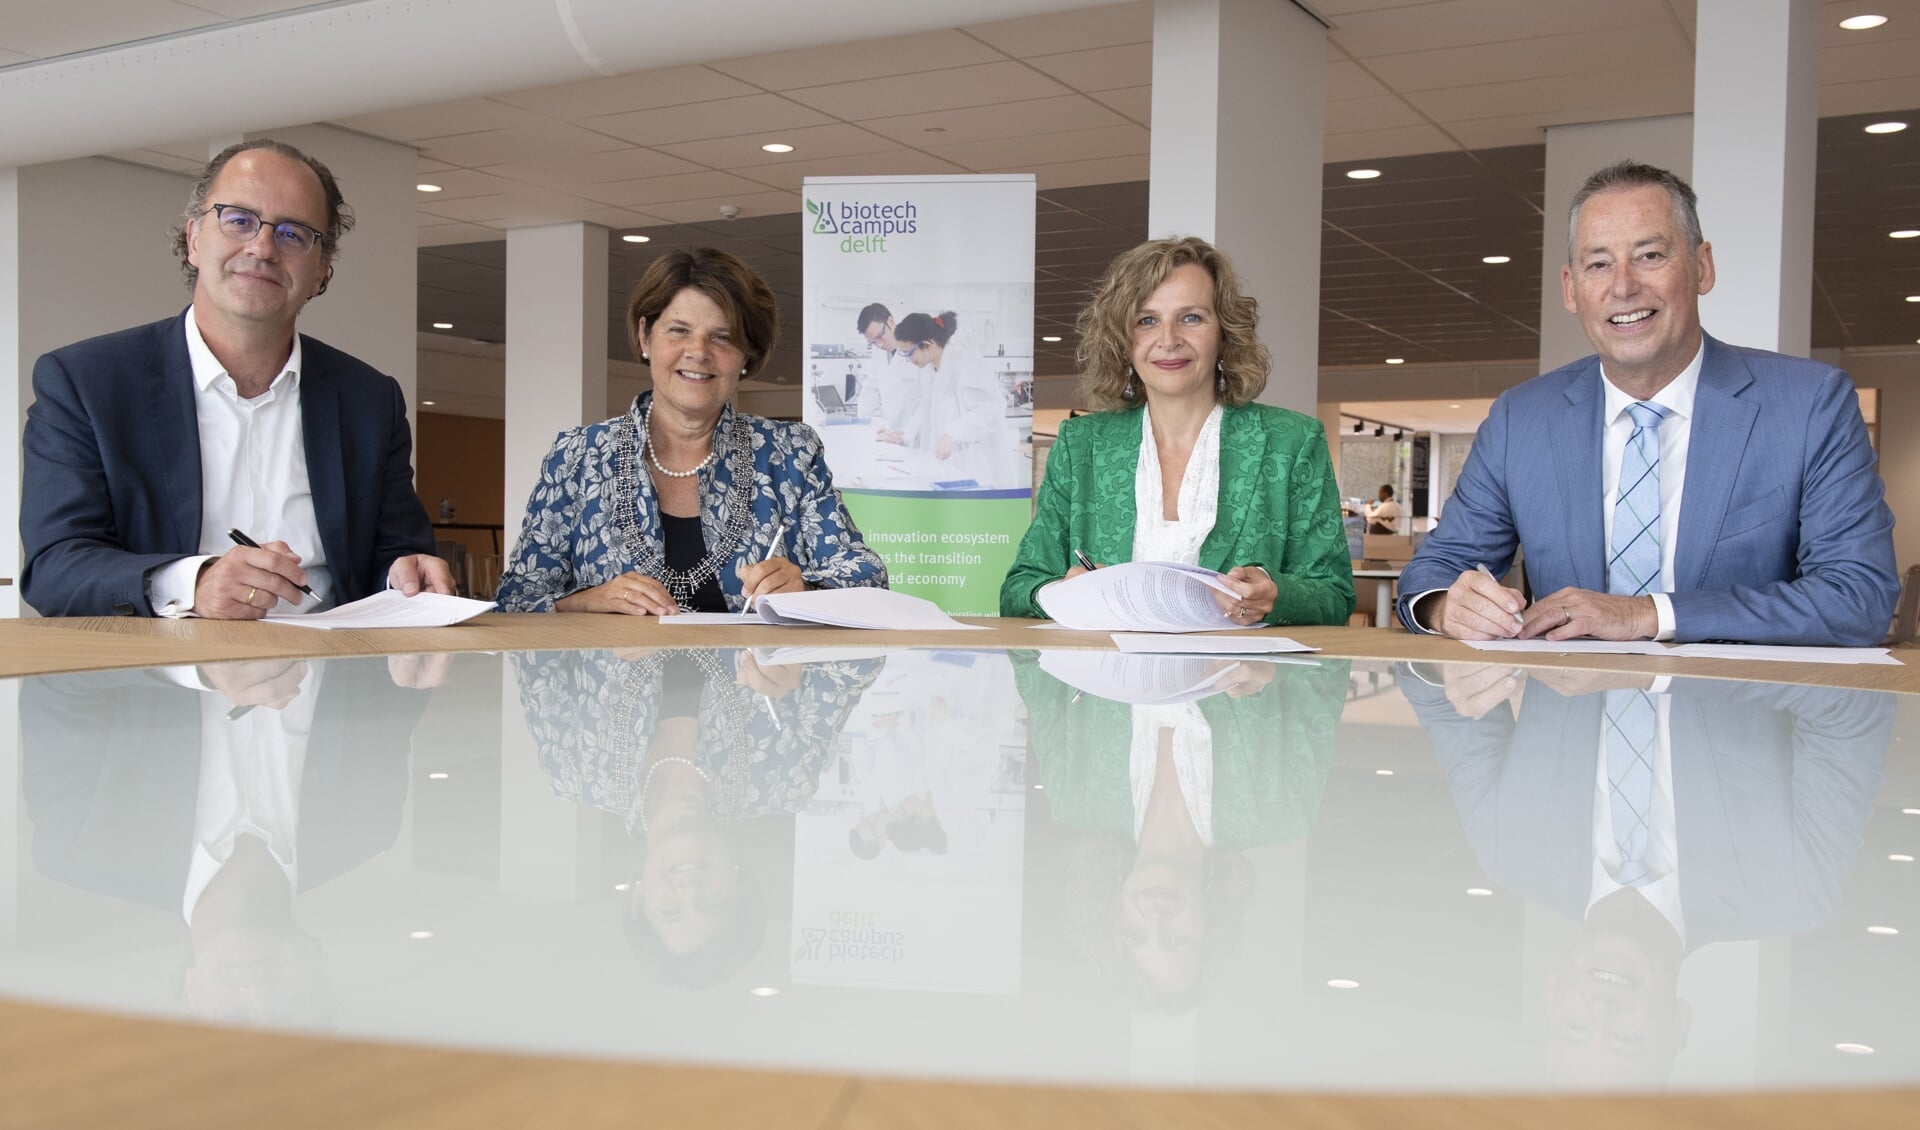 Rinke Zonneveld, Marja van Bijsterveldt, Edith Schippers en Tim van der Hagen ondertekenen de overeenkomst (Foto: Ermindo-Armino)